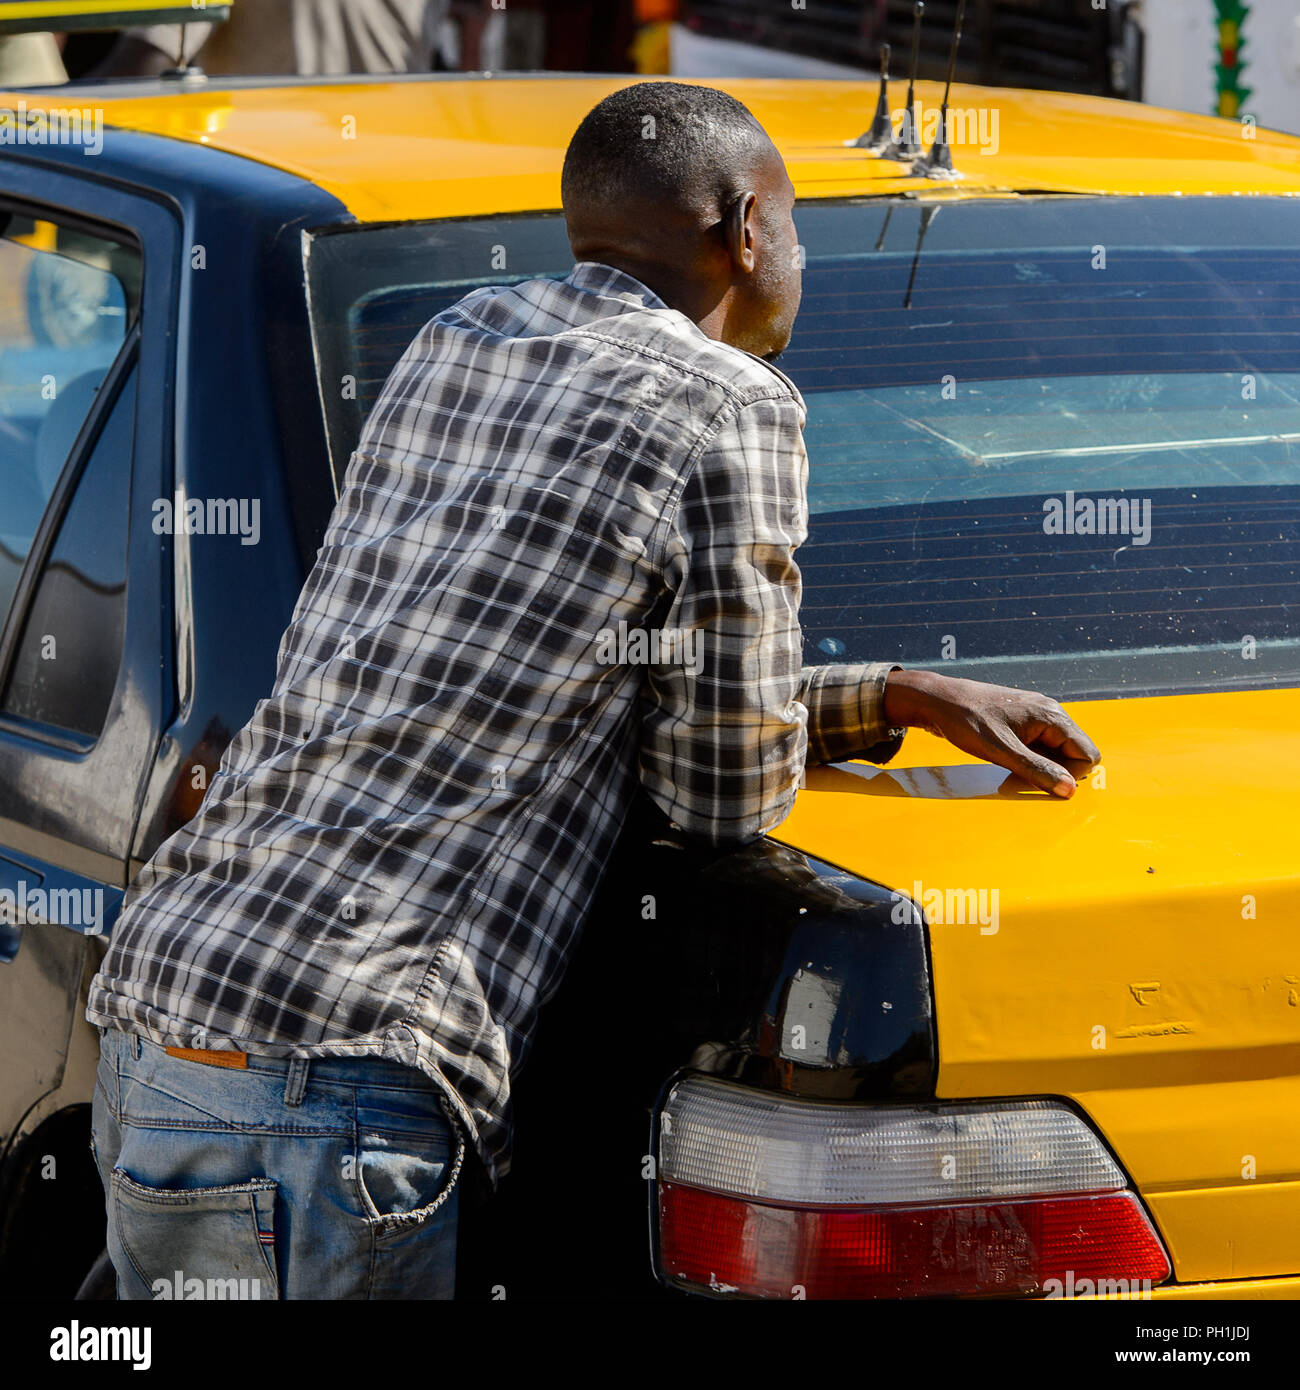 SAINT LOUIS, SENEGAL - Apr 24, 2017: Unbekannter senegalesischen Mann in Plaid Shirt lehnt sich an das Auto am lokalen Markt von Saint Louis, Senegal Stockfoto